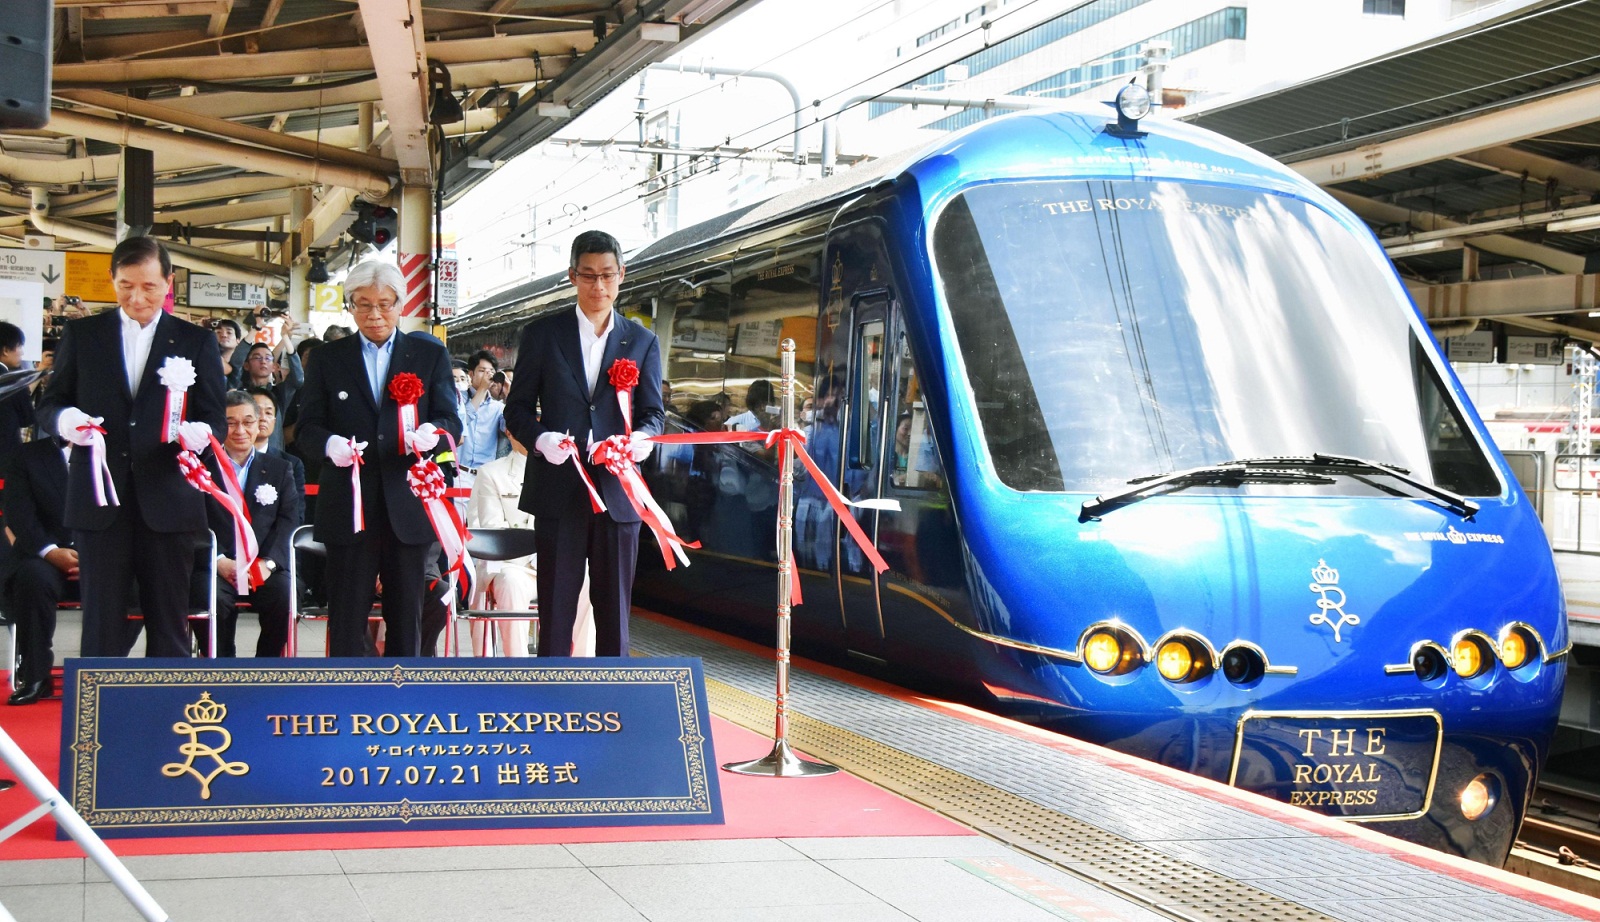 The Royal Express Train, Japan